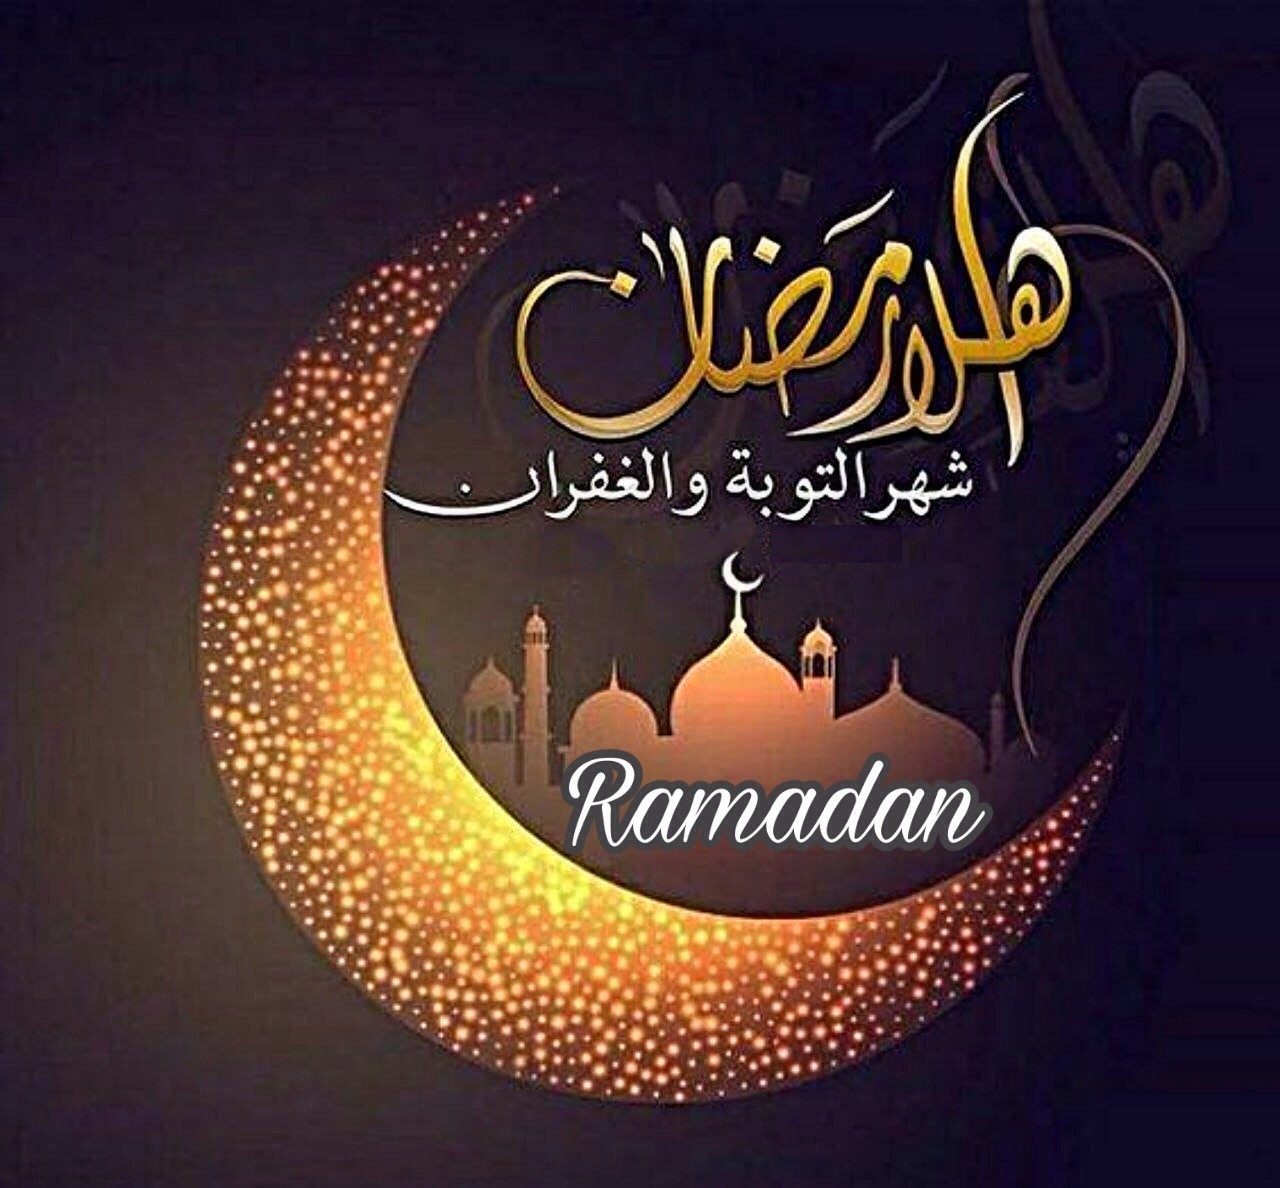 خلفيات رمضان صور رمضان 2021 أجمل صور عن رمضان تهنئة بمناسبة رمضان